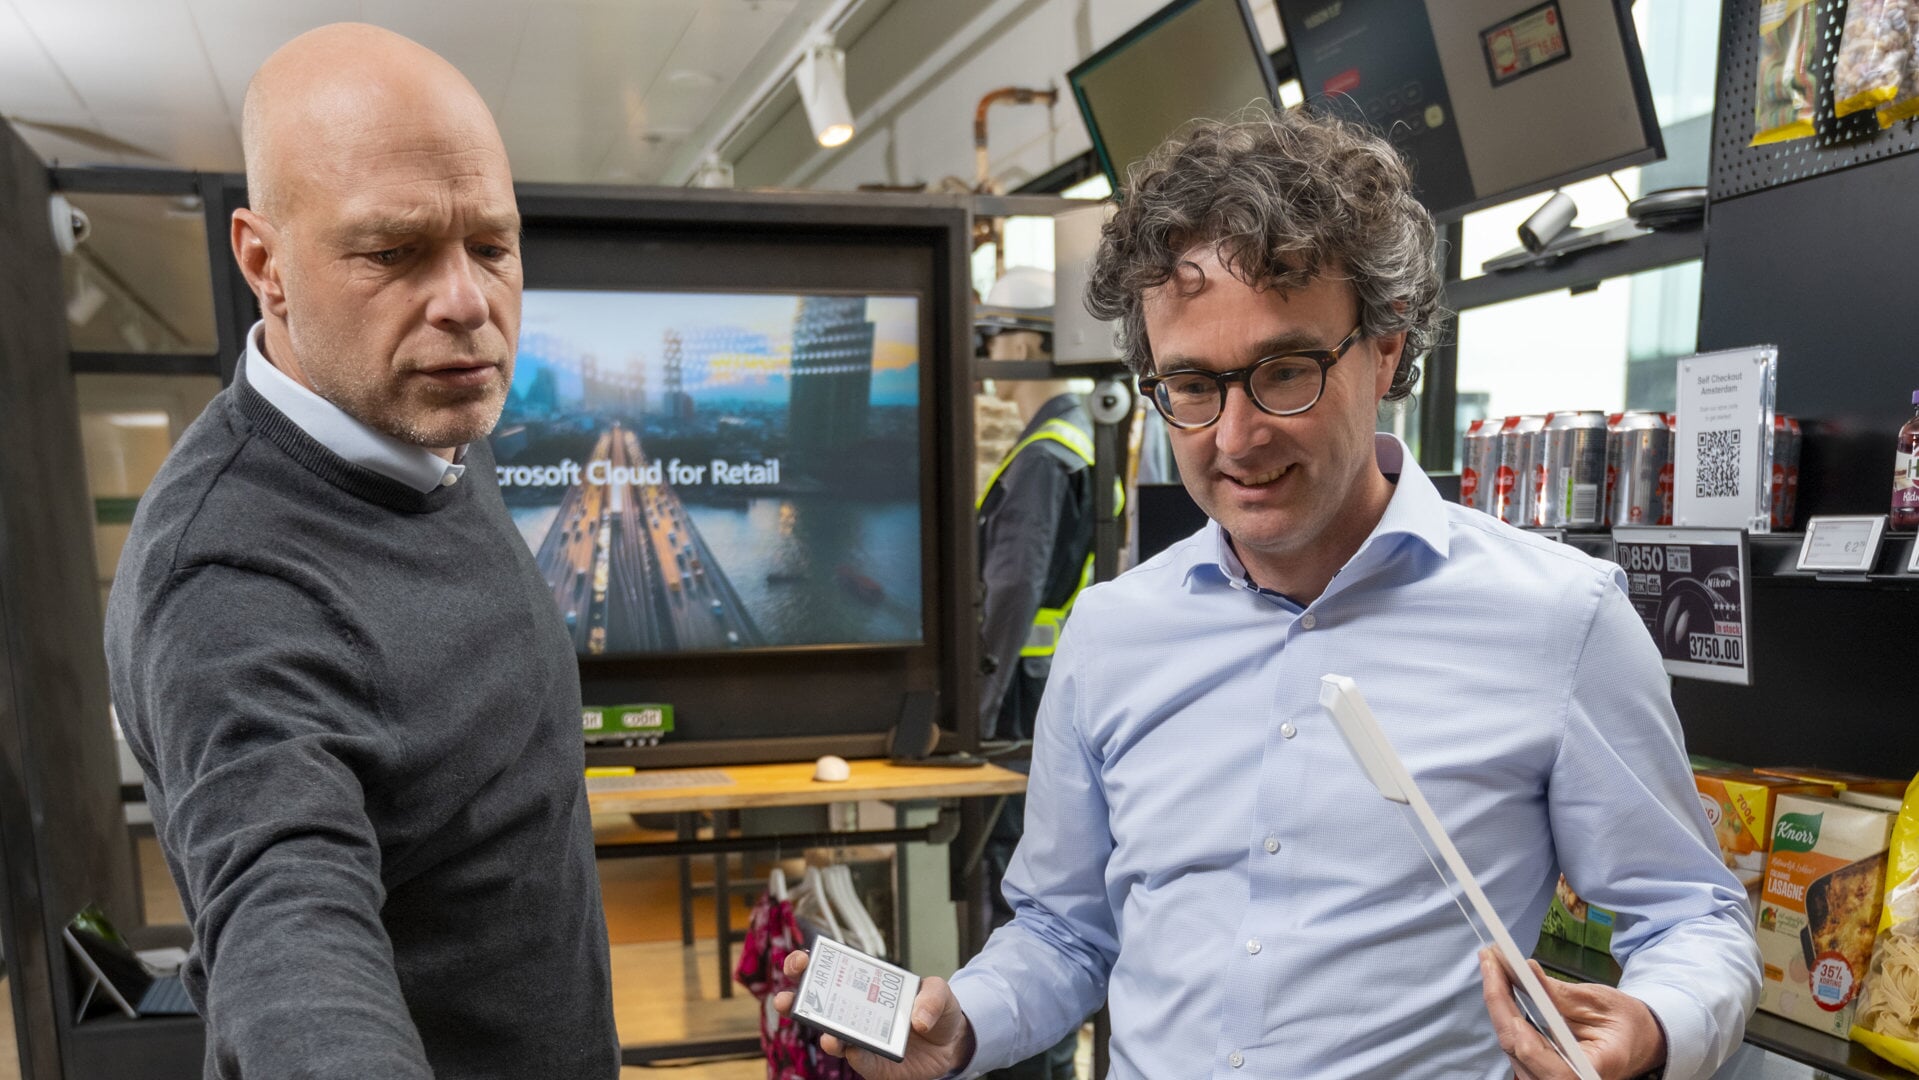 Bart Fischer (l.) en Eelco Hos, hier in een ‘lab’ van Microsoft, dat in dat lab allerlei technologische toepassingen voor winkels onderzoekt.